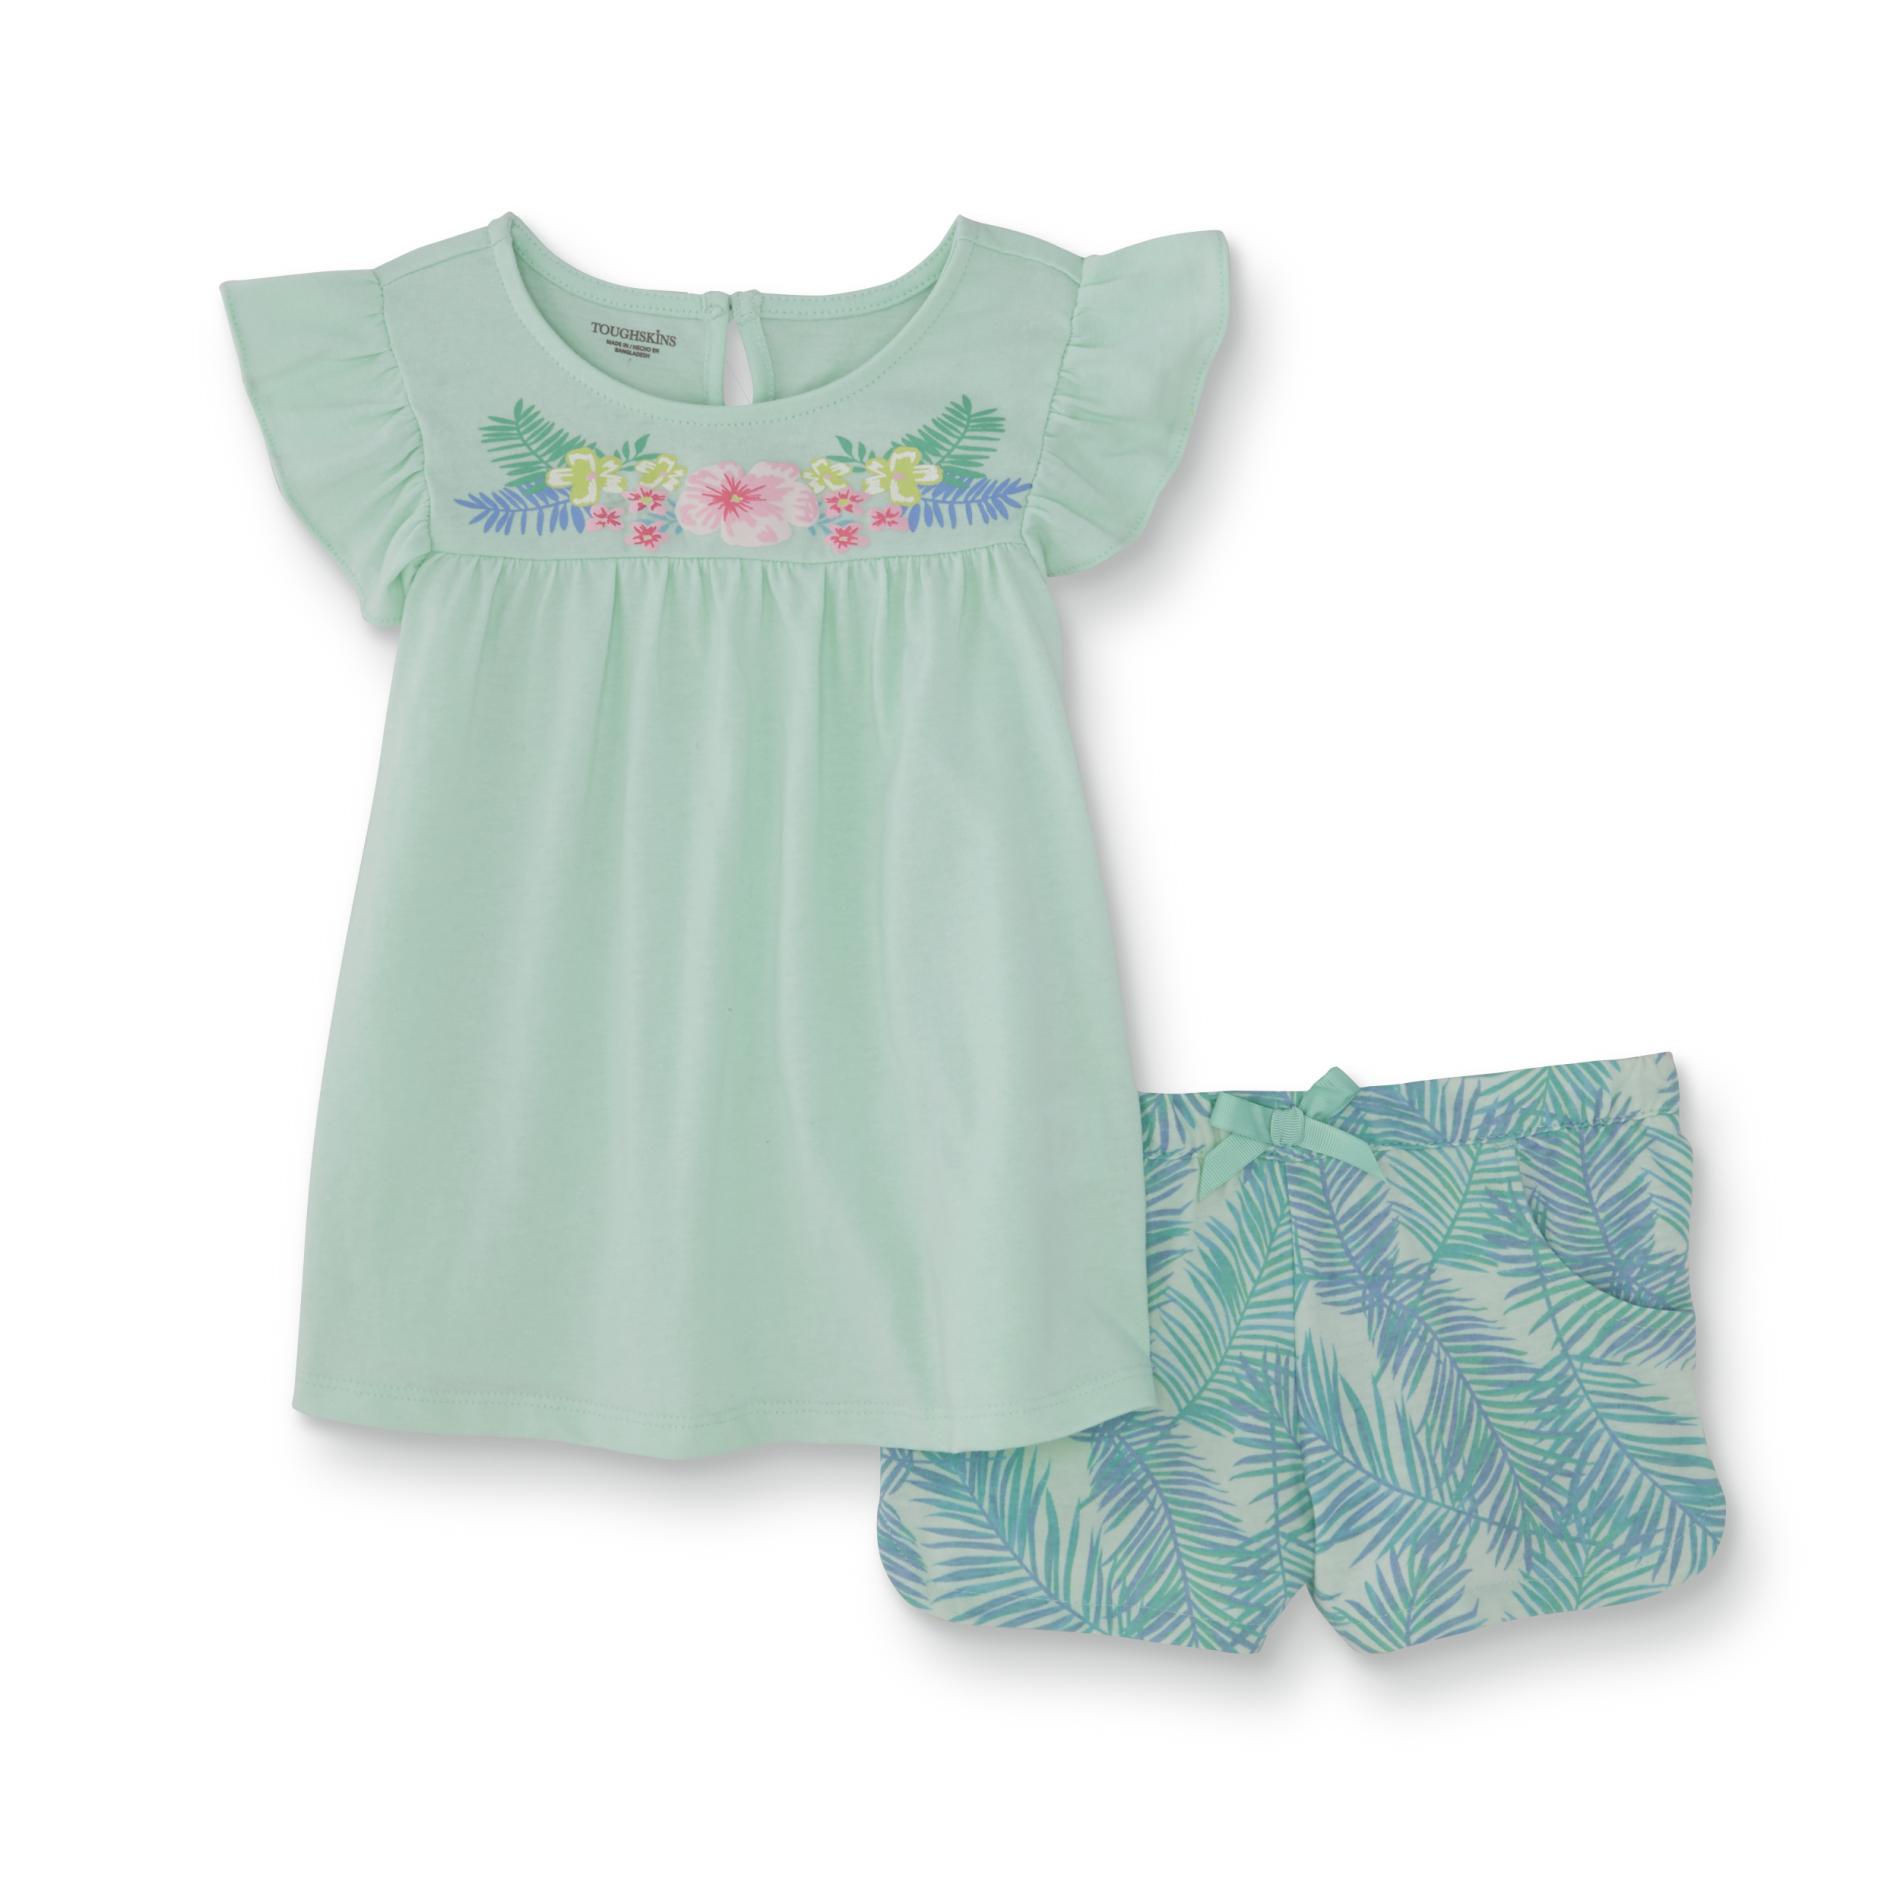 Toughskins Girls' Flutter T-Shirt & Shorts - Tropical Foliage